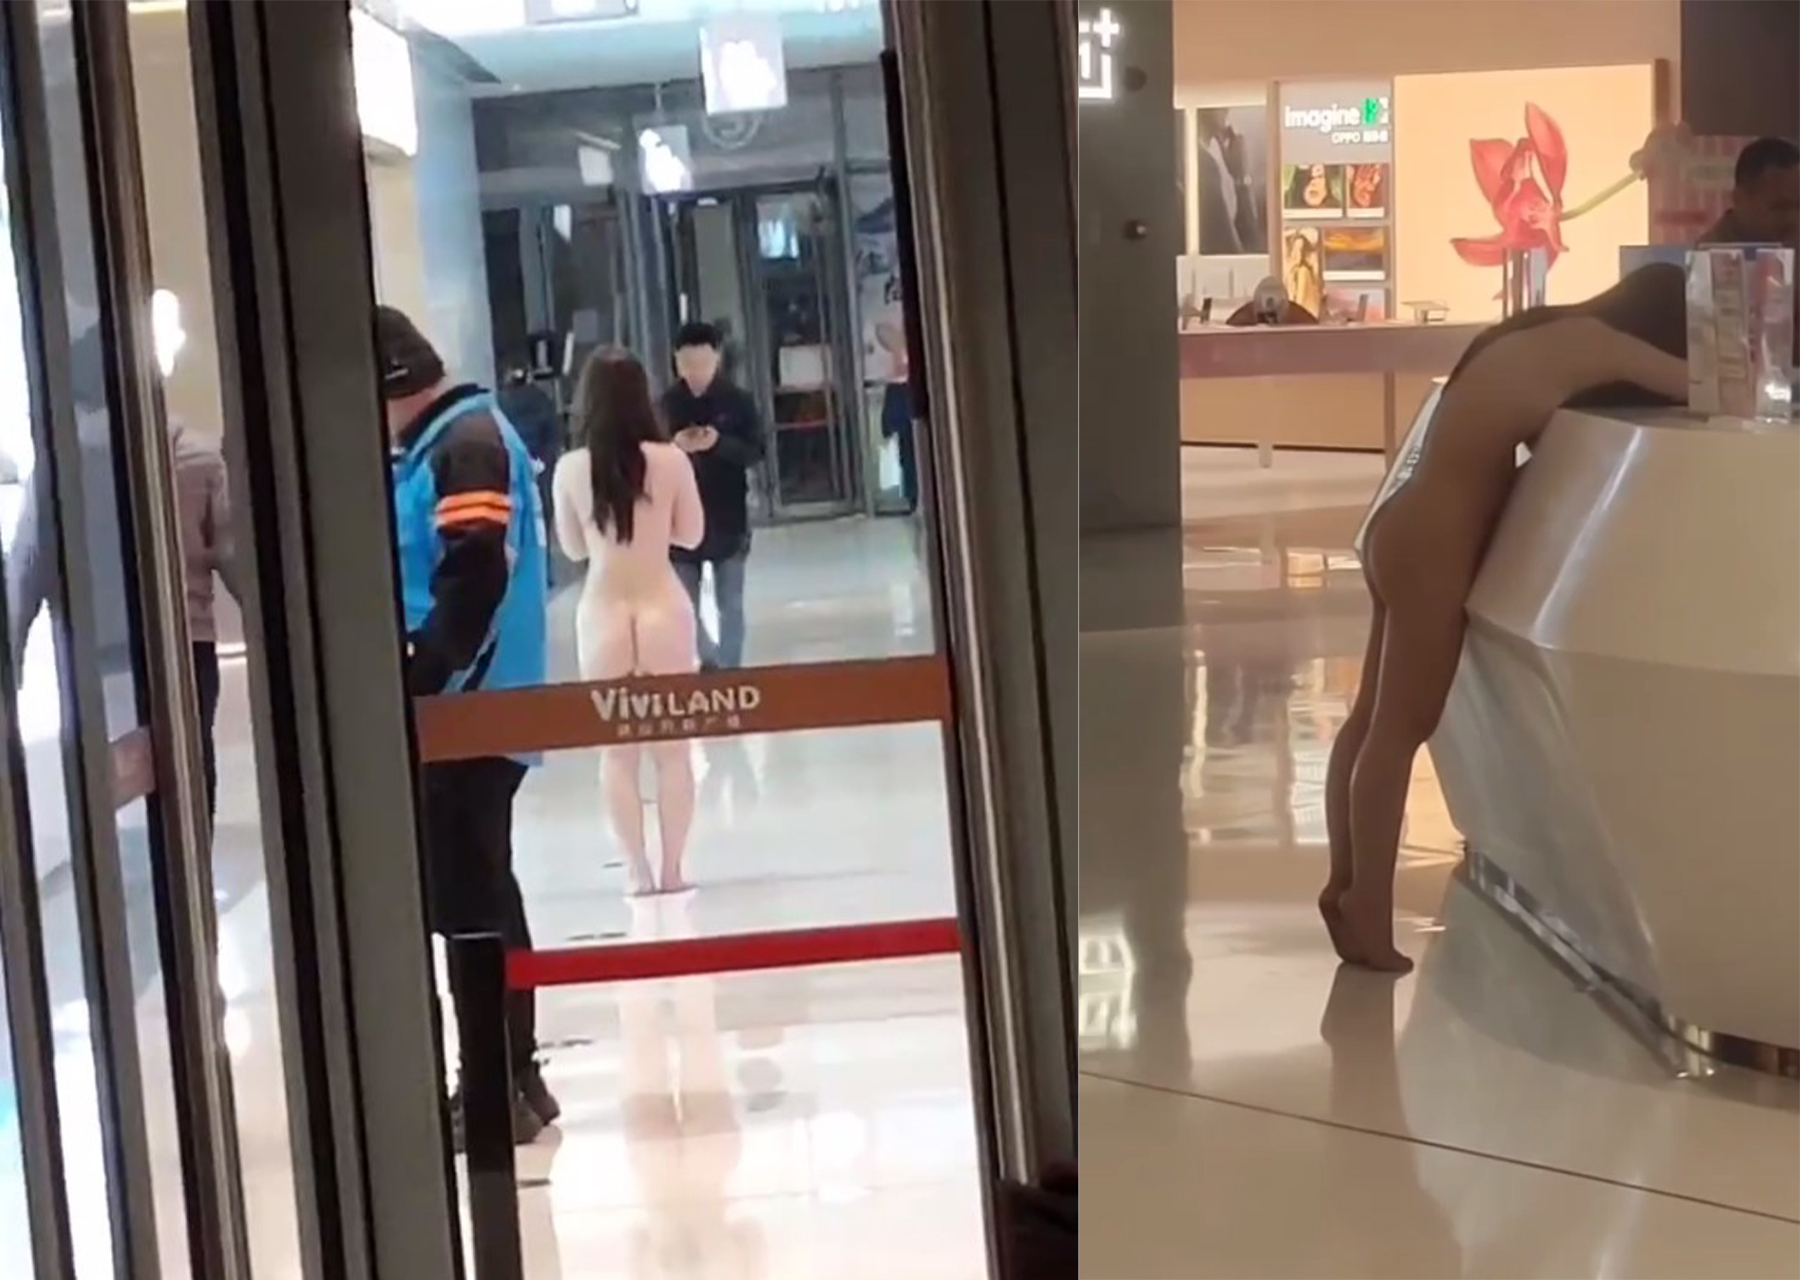 우한 홍산 반커광장 여자, 남자친구가 절친을 속였다는 이유로 알몸으로 뛰다 길거리에서 보복성 나체 사진 공개